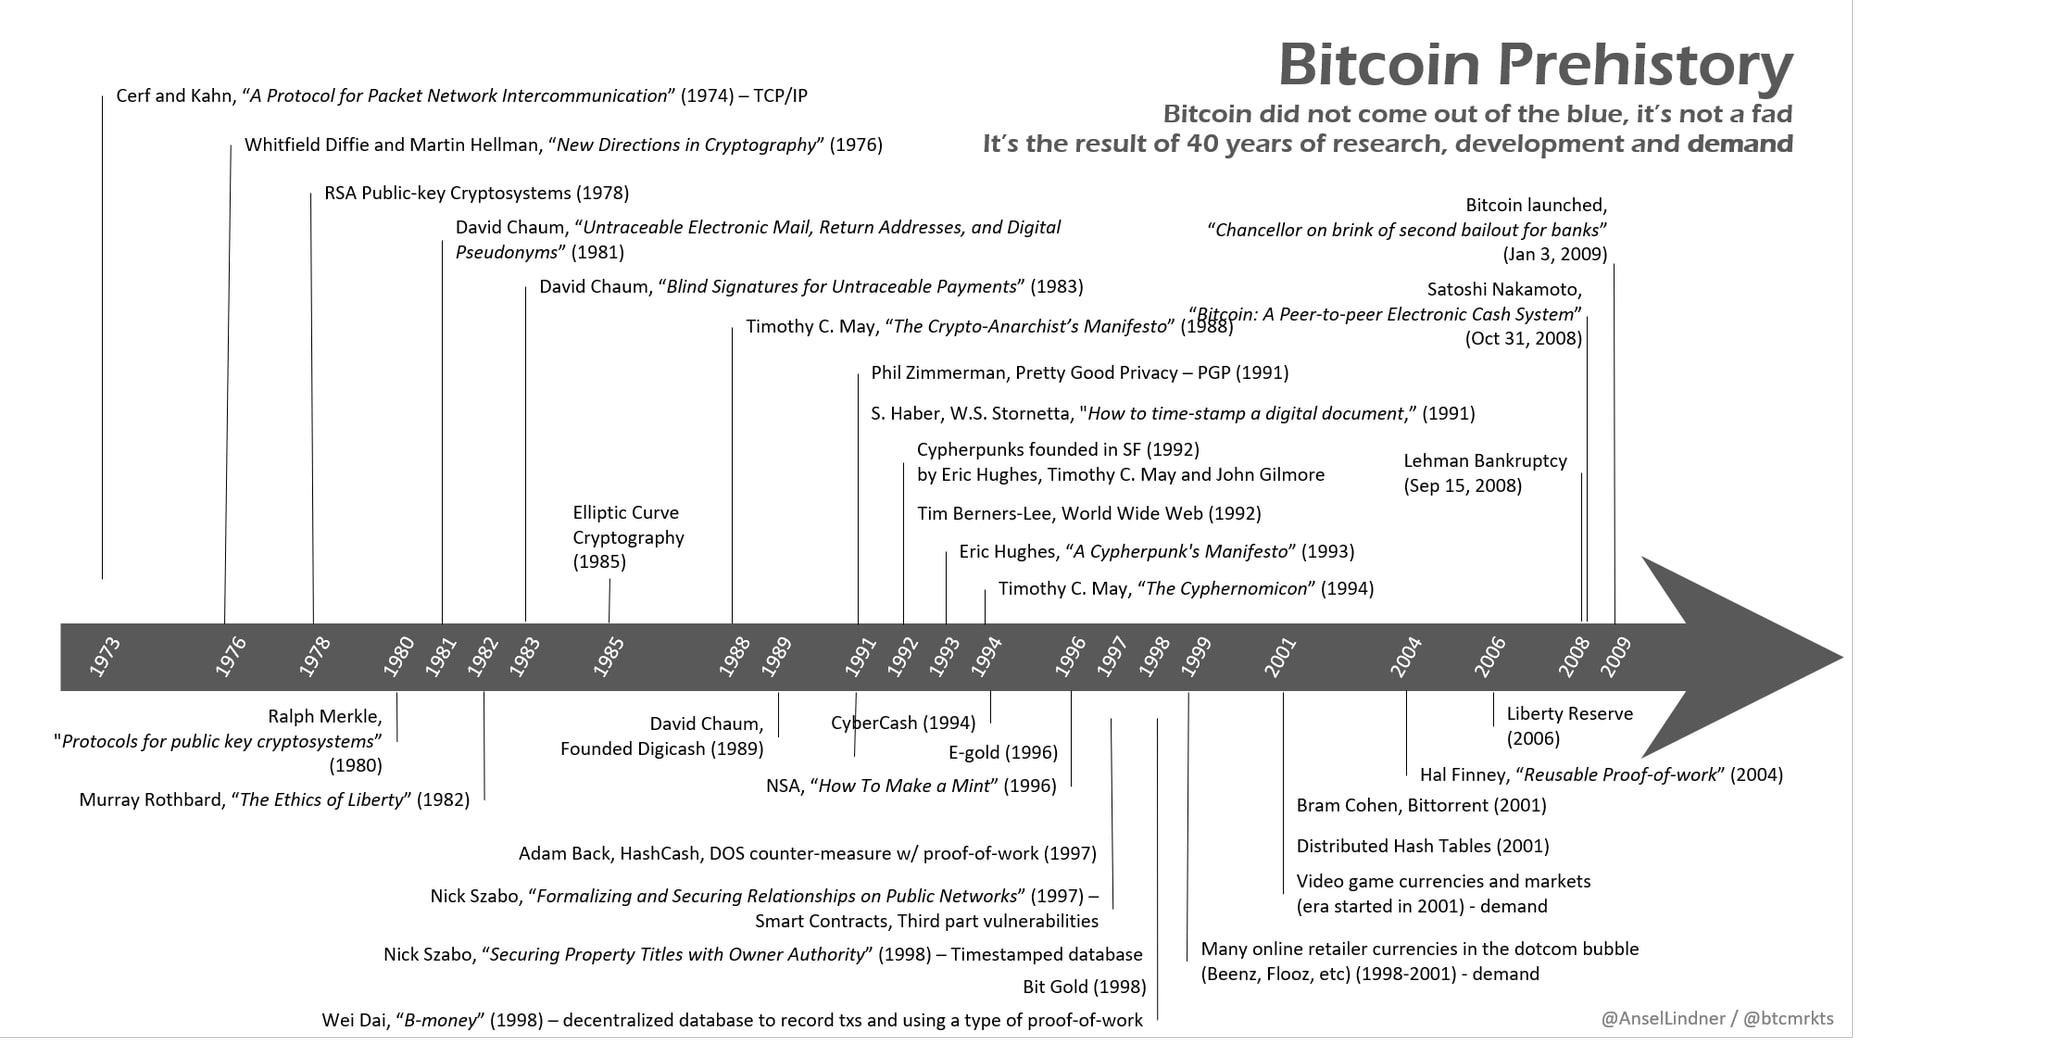 Bitcoin kopen - uitvinding pre historie